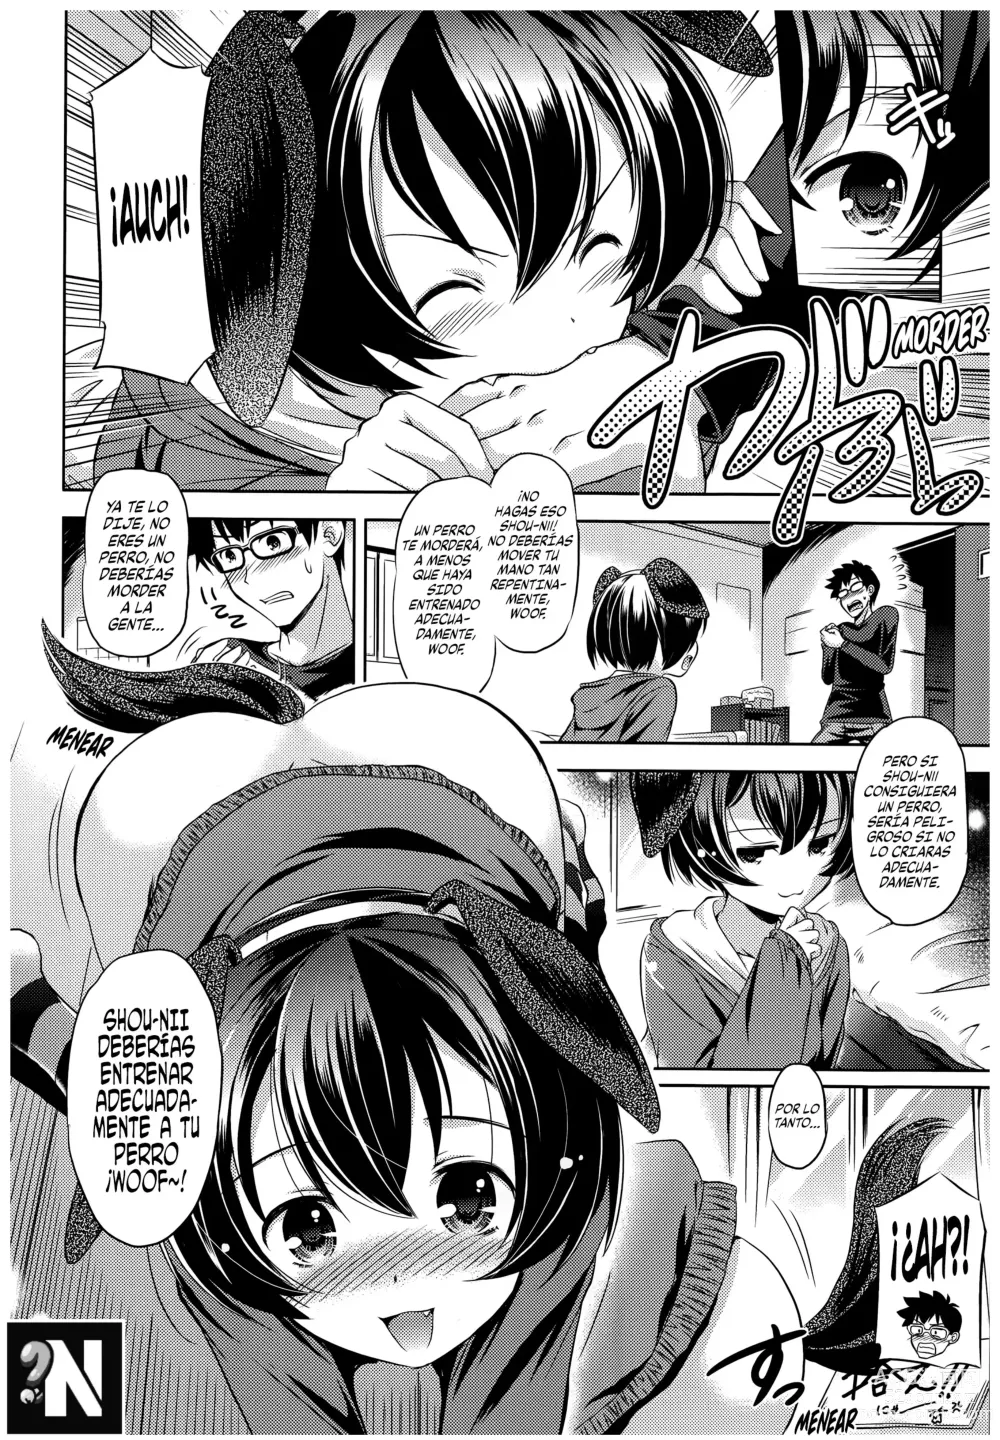 Page 6 of manga Entrenando a un Perrito